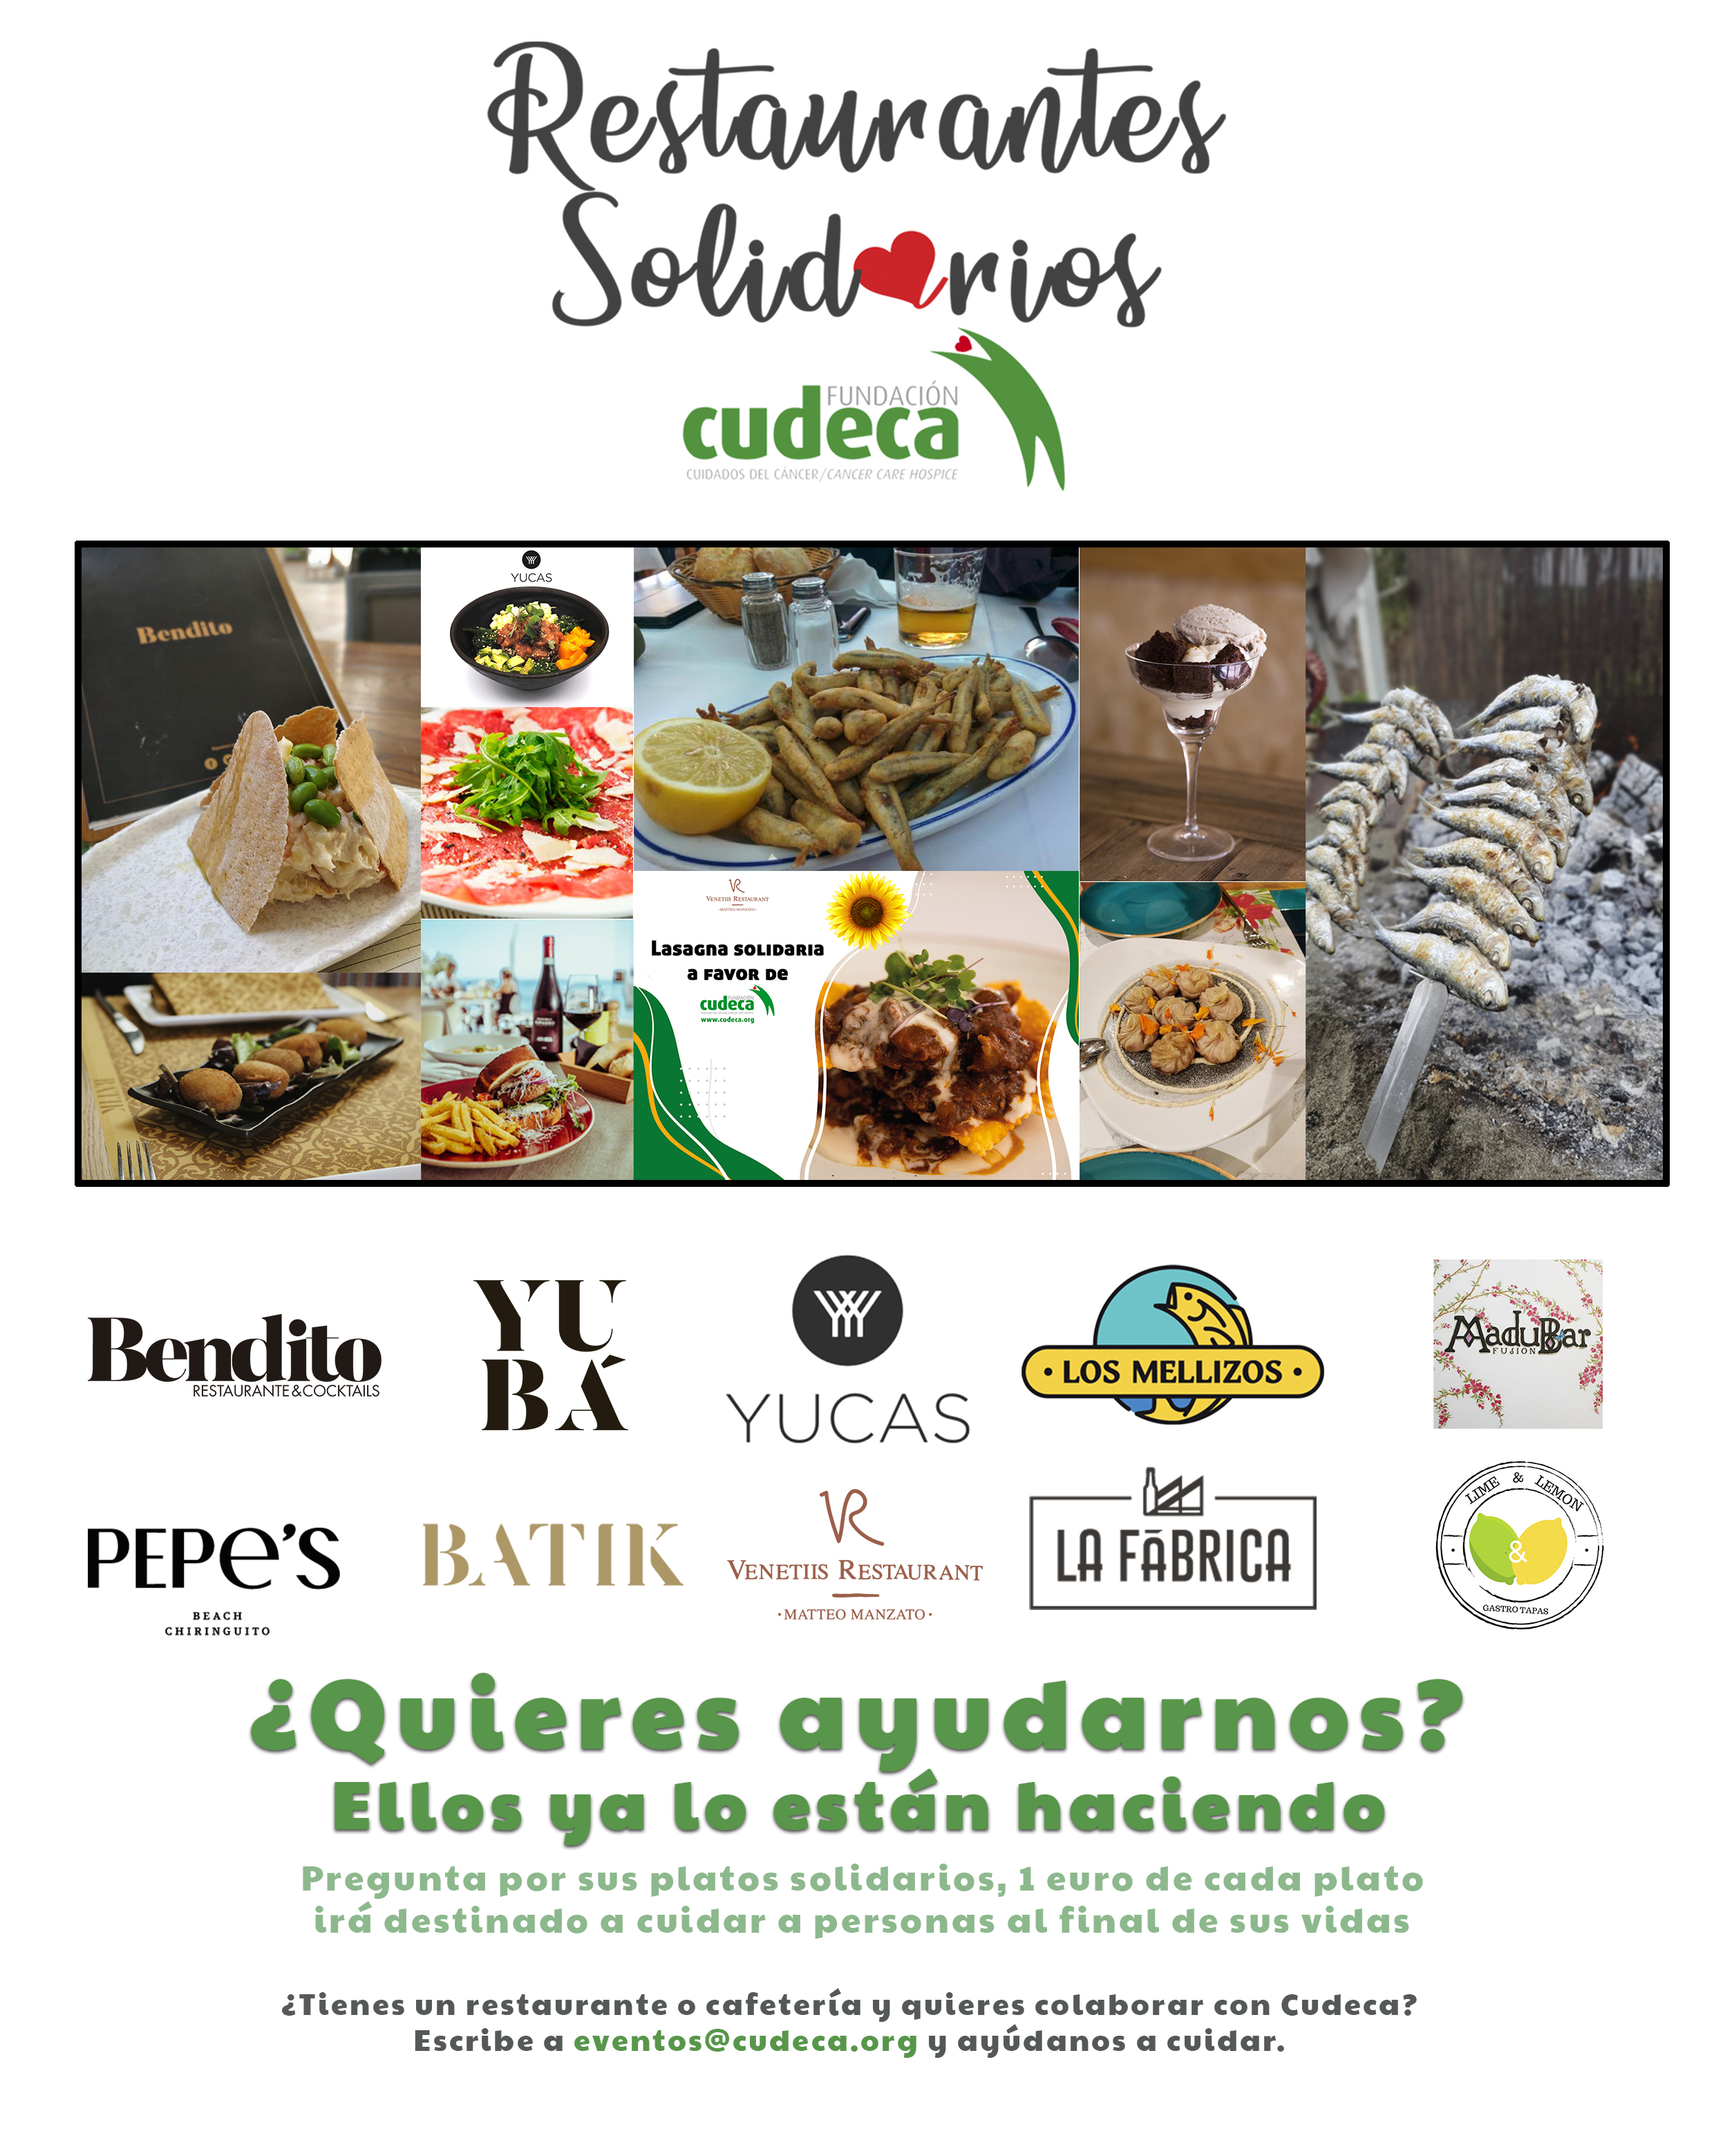 Restaurantes Solidarios con Cudeca